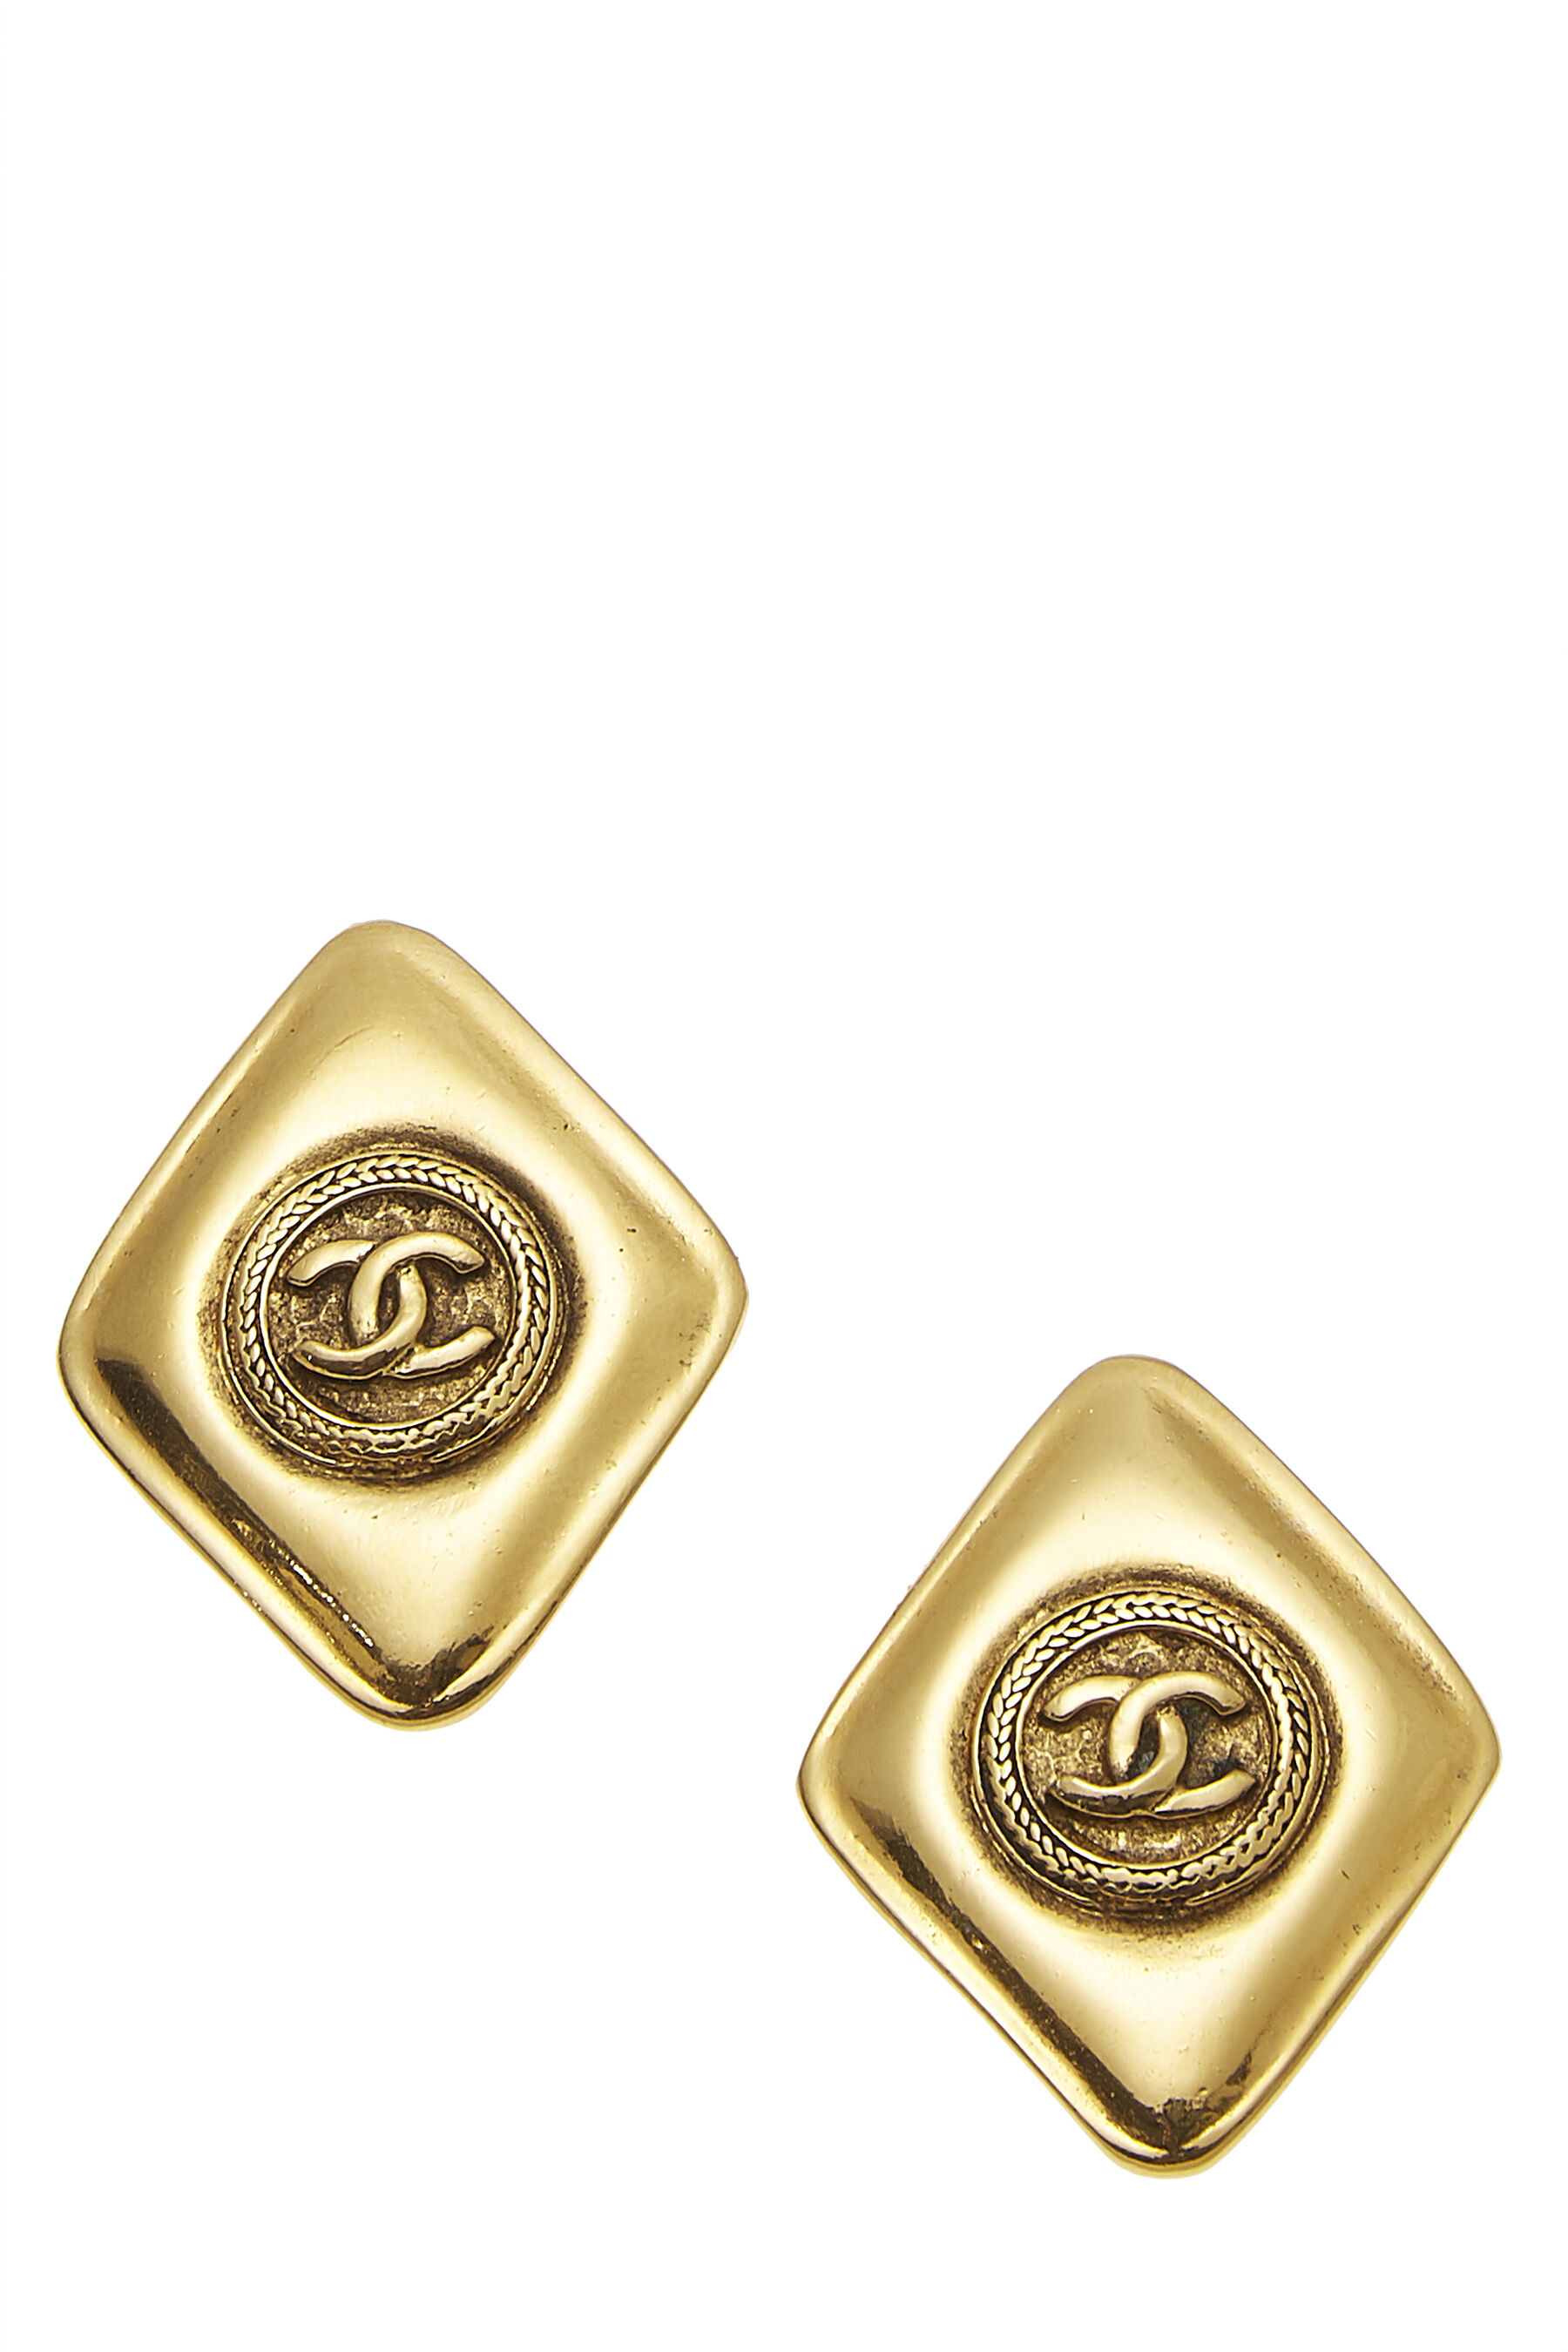 Chanel Gold 'CC' on Diamond Earrings Q6JHZF17DB014